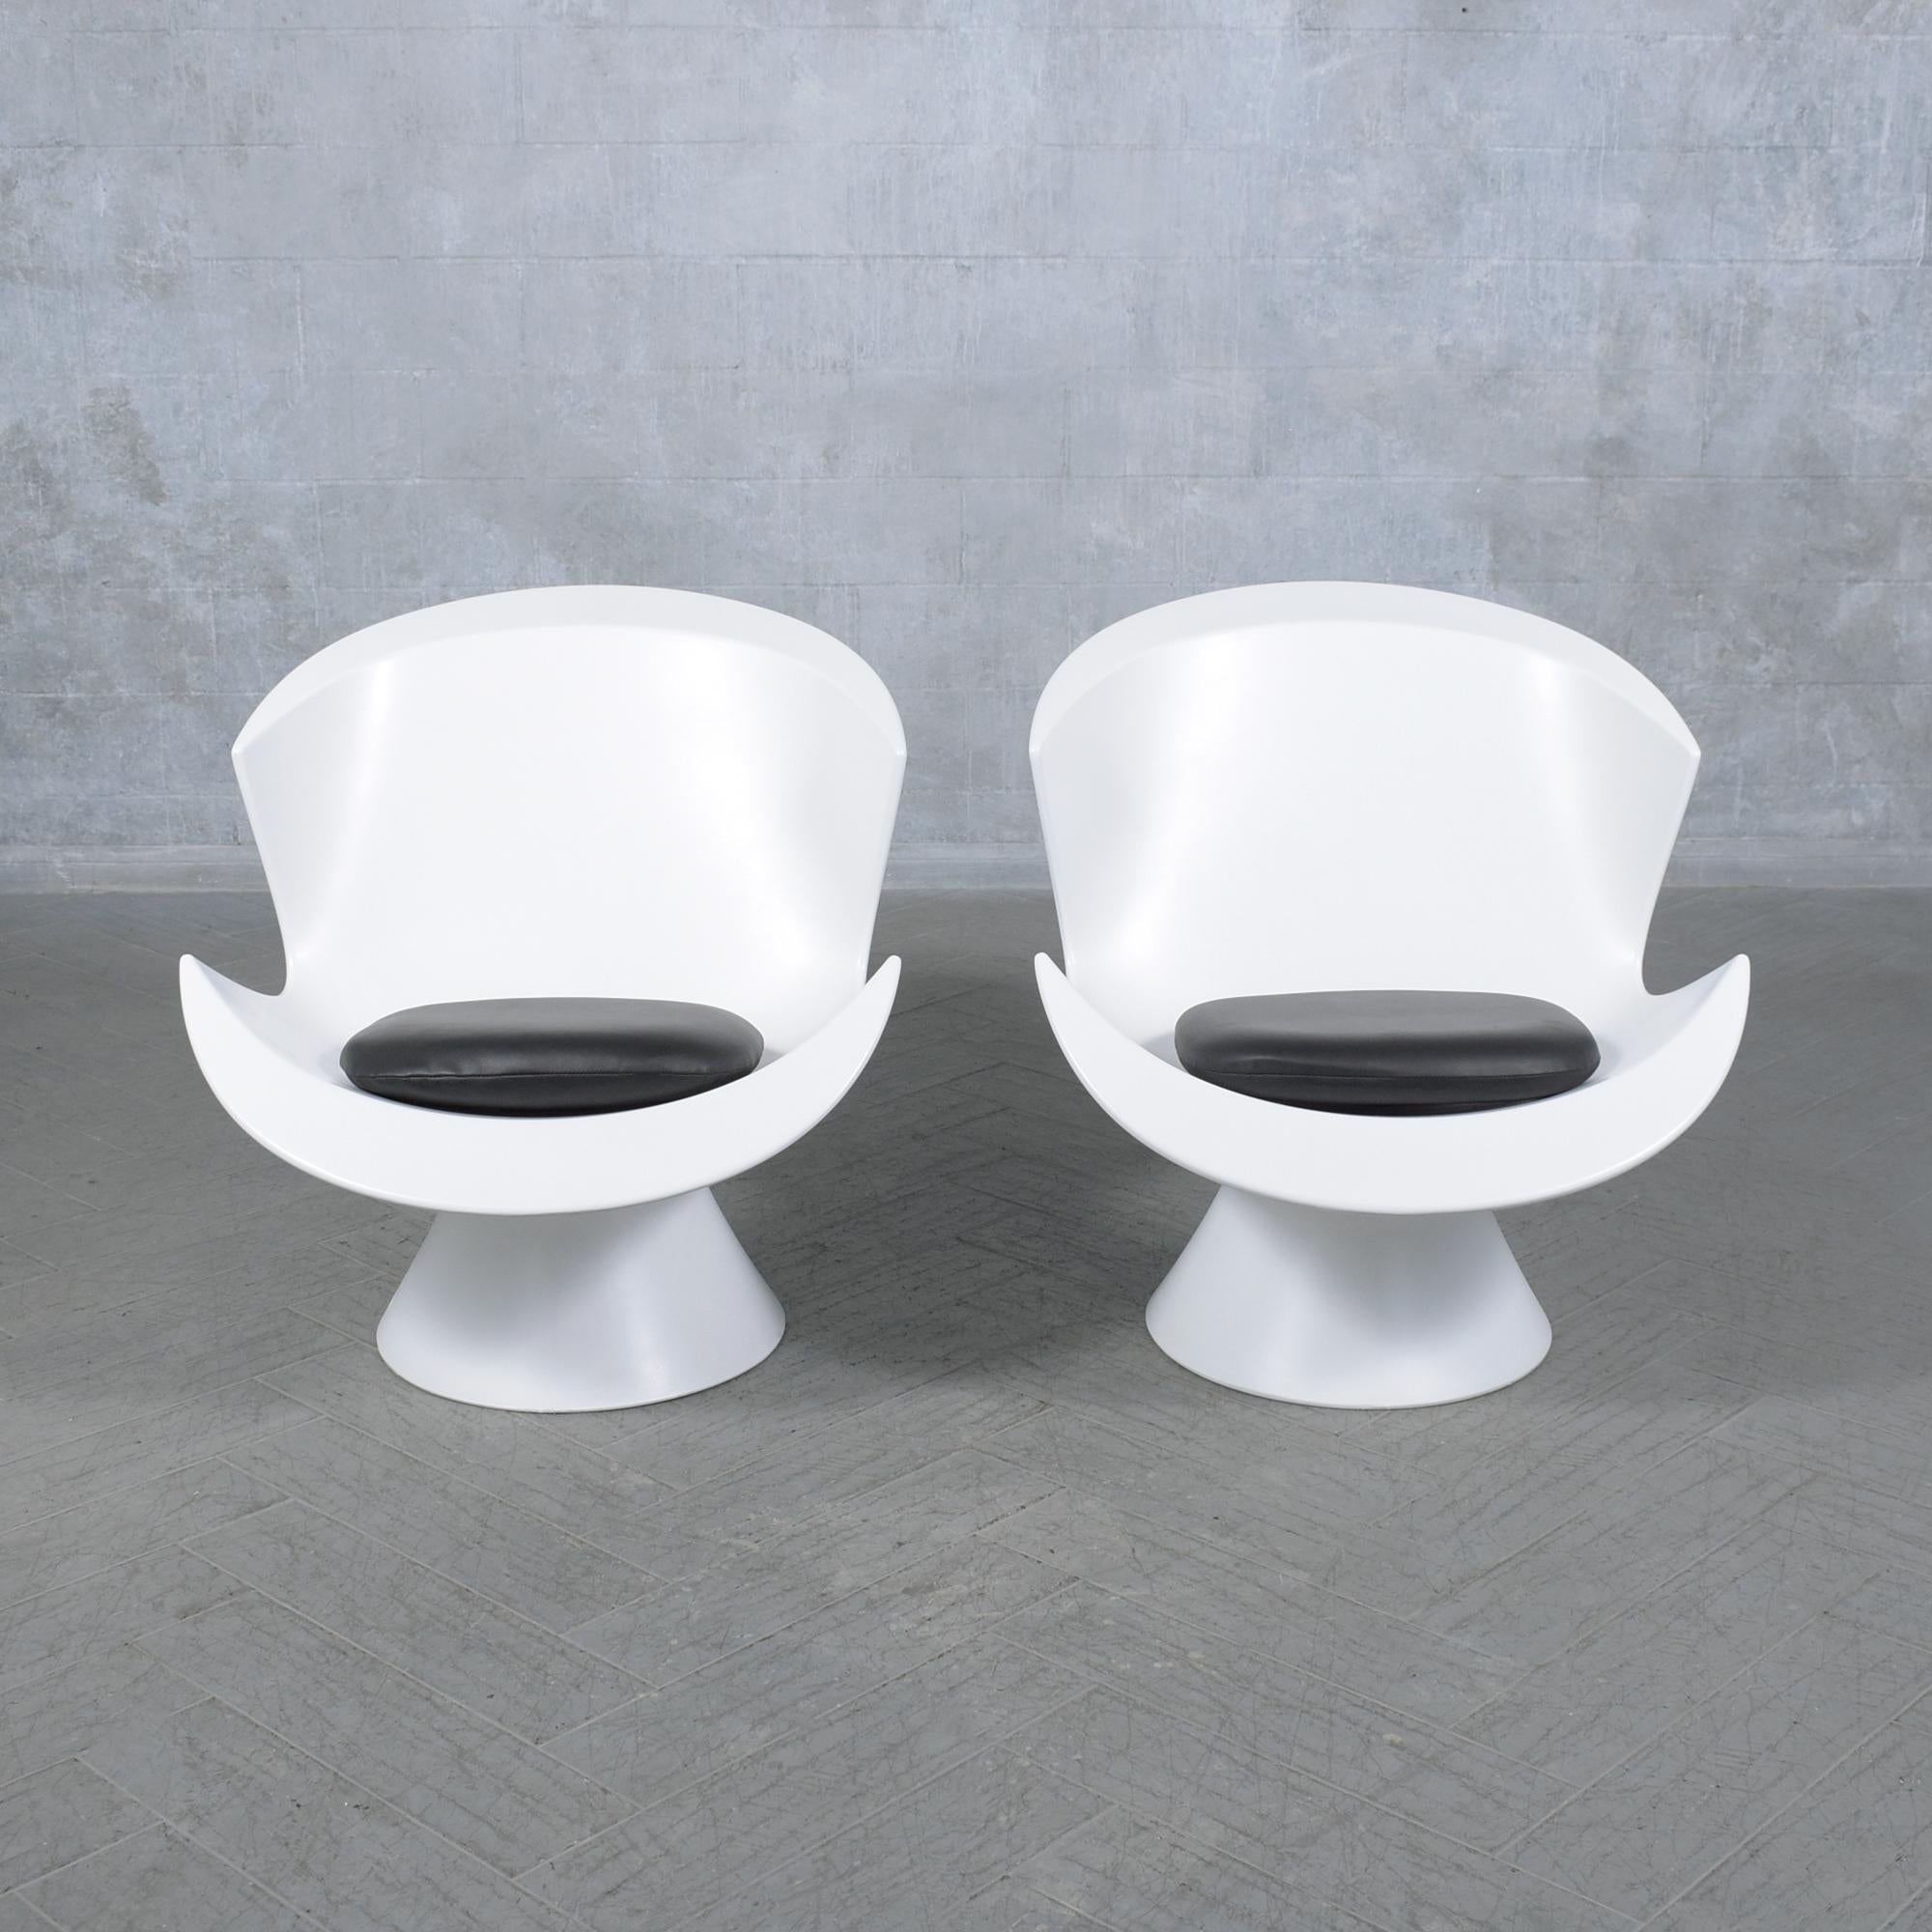 Tauchen Sie ein in die Verschmelzung von modernem Design und opulentem Komfort mit unserem exklusiven Paar postmoderner Loungesessel des renommierten Designers Karim Rashid für Label. Diese Sessel, ein Höhepunkt zeitgenössischer Ästhetik, wurden aus